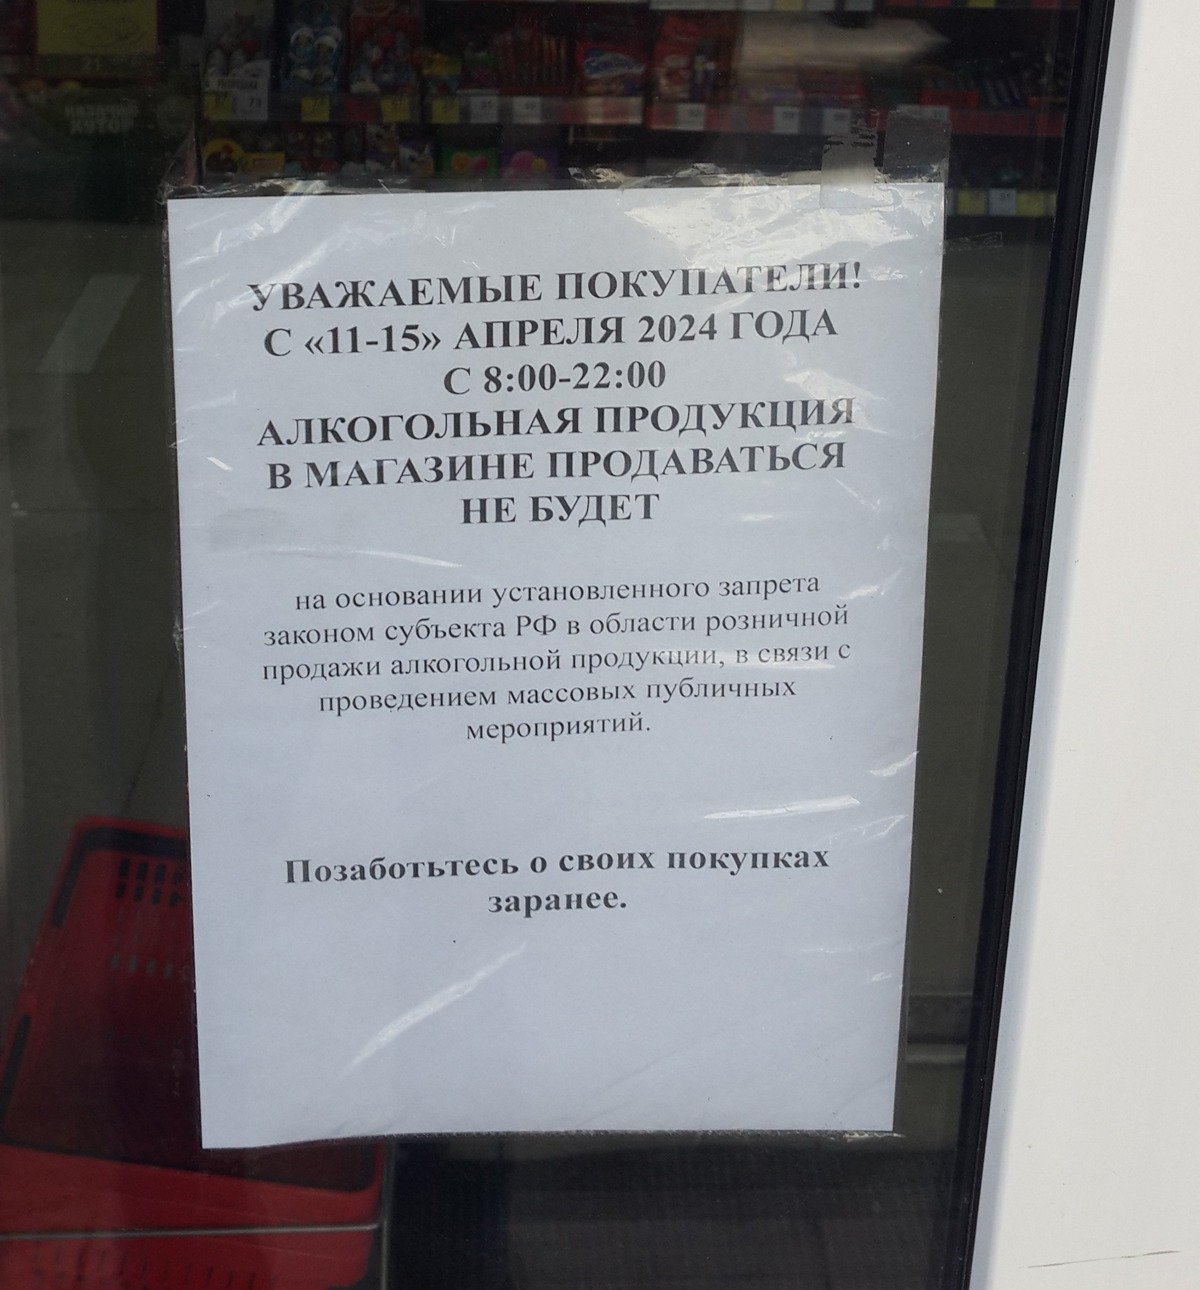 Продажа алкоголя временно прекращена. Фото: Алексей Тарасов / «Новая газета»